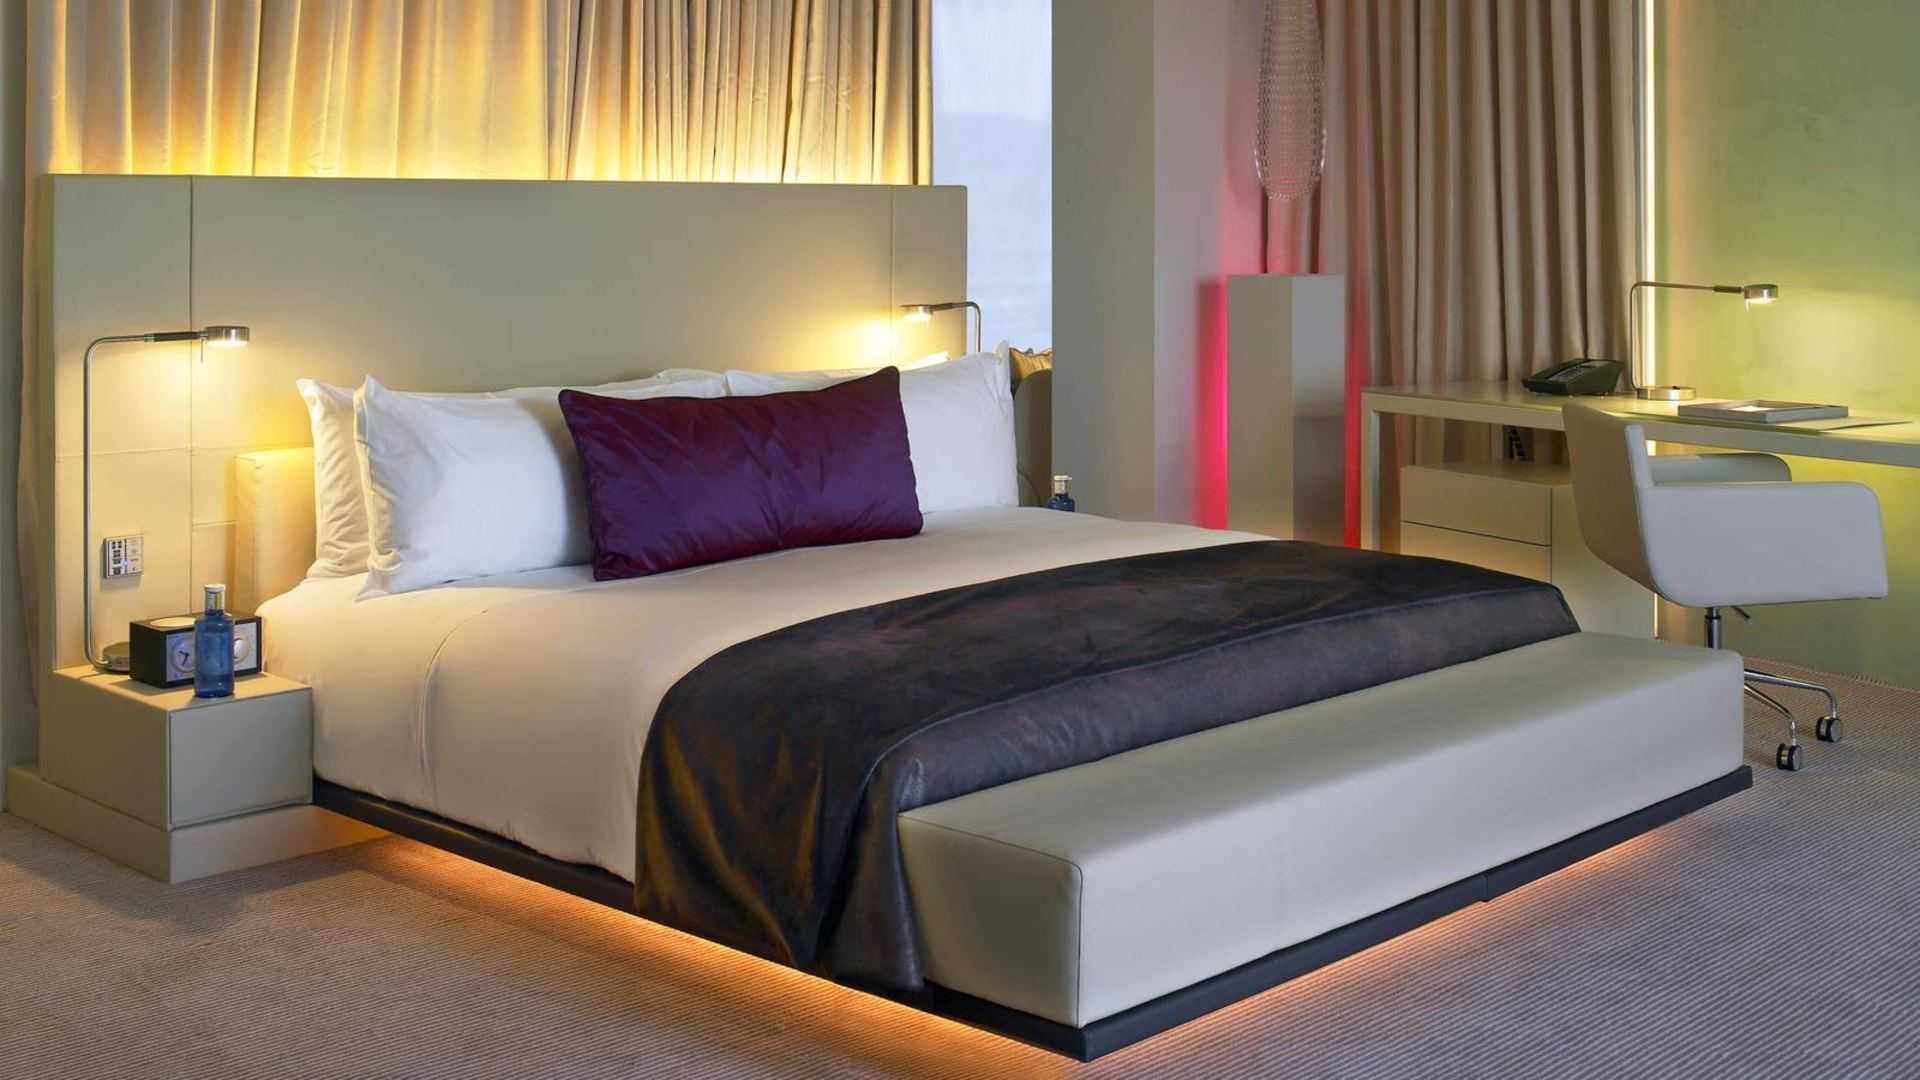 Идеальная кровать для спальни — как ее выбрать?